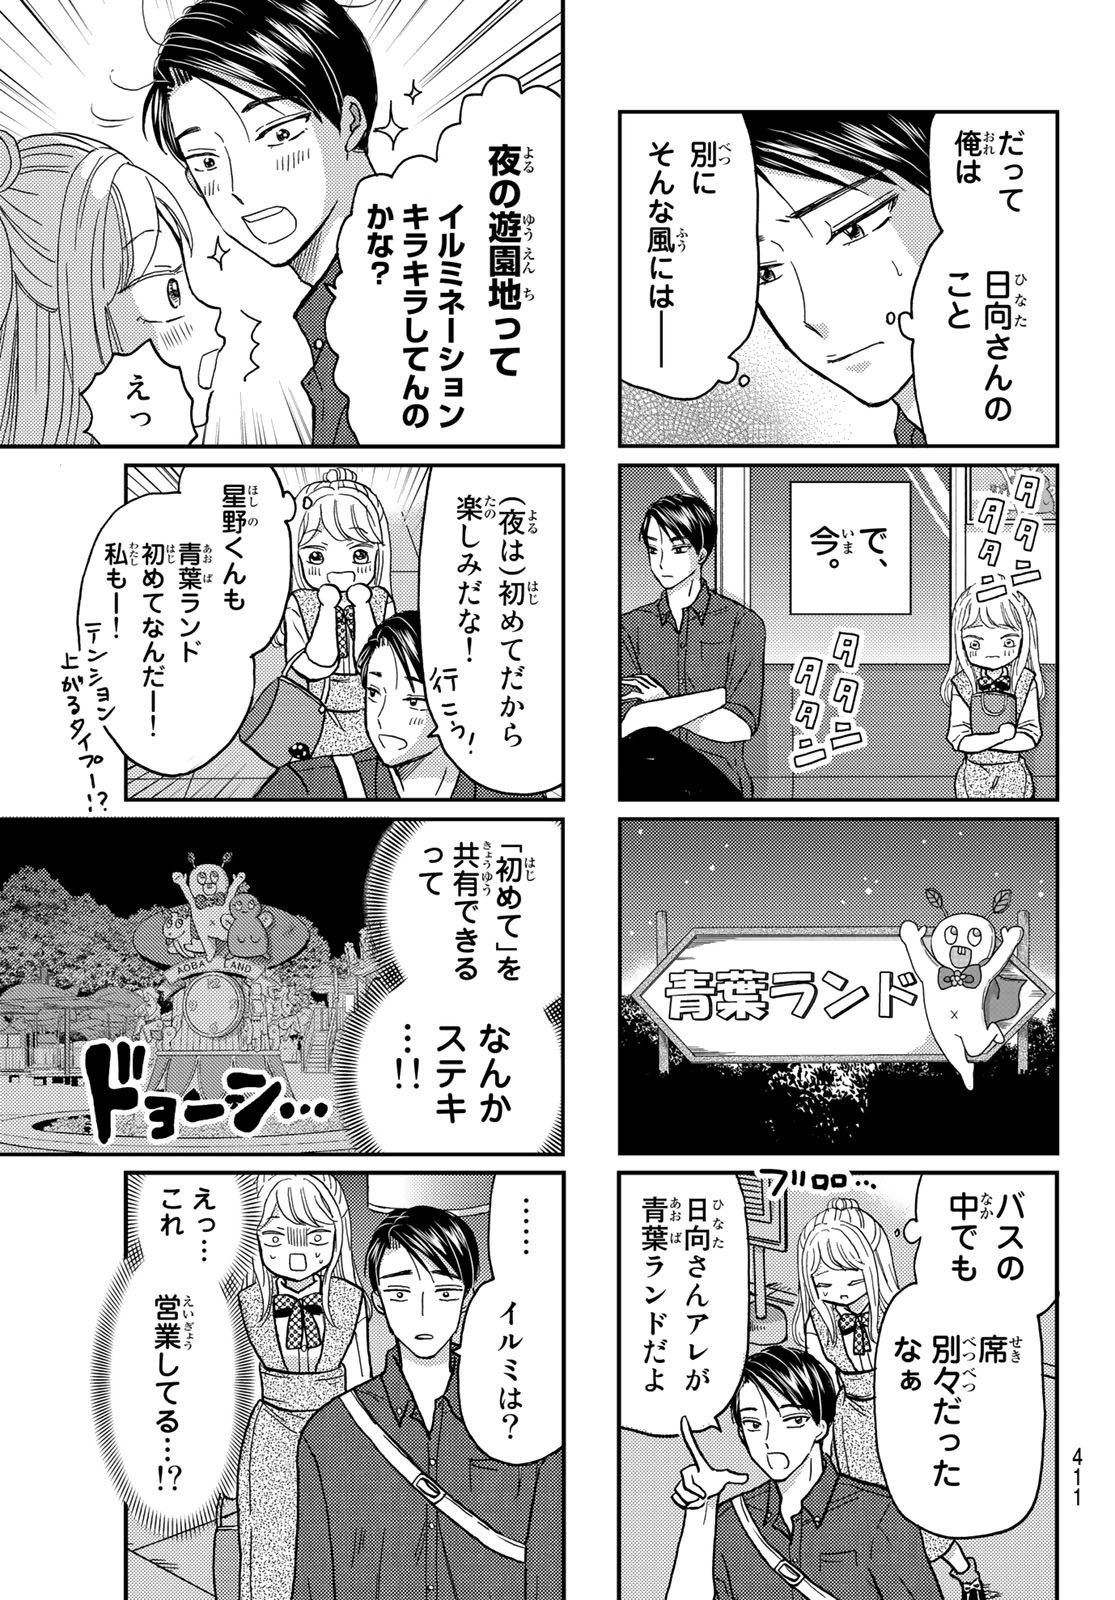 Hinata-san, Hoshino desu. - Chapter 032 - Page 3